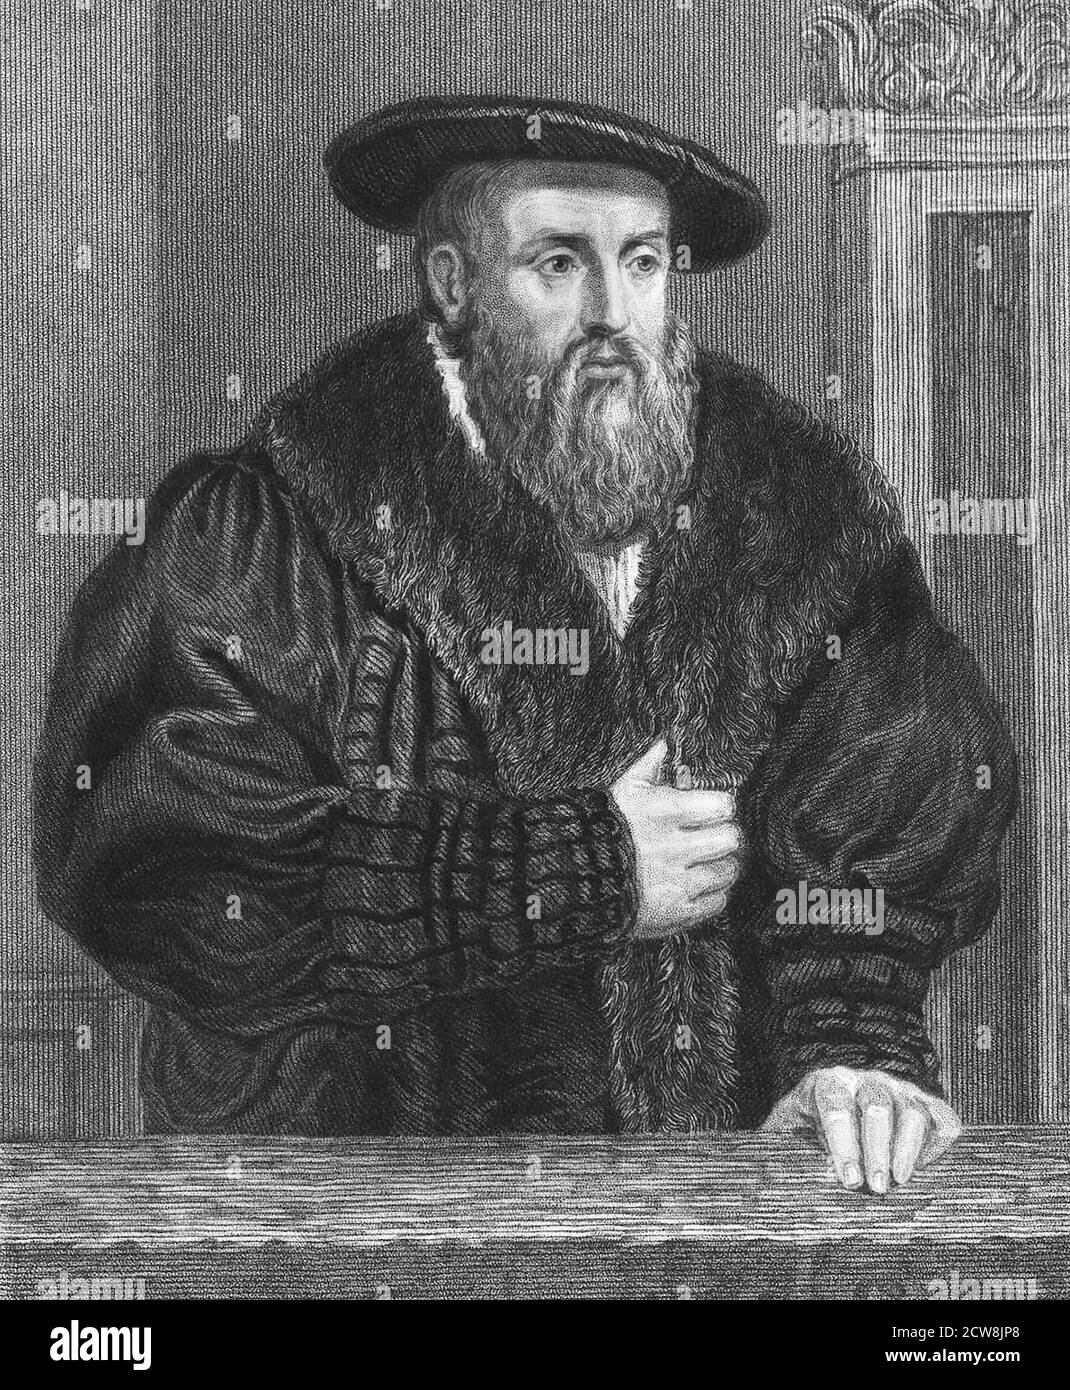 Retrato del astrónomo alemán Johannes Kepler (1571-1630), grabado del siglo XIX Foto de stock